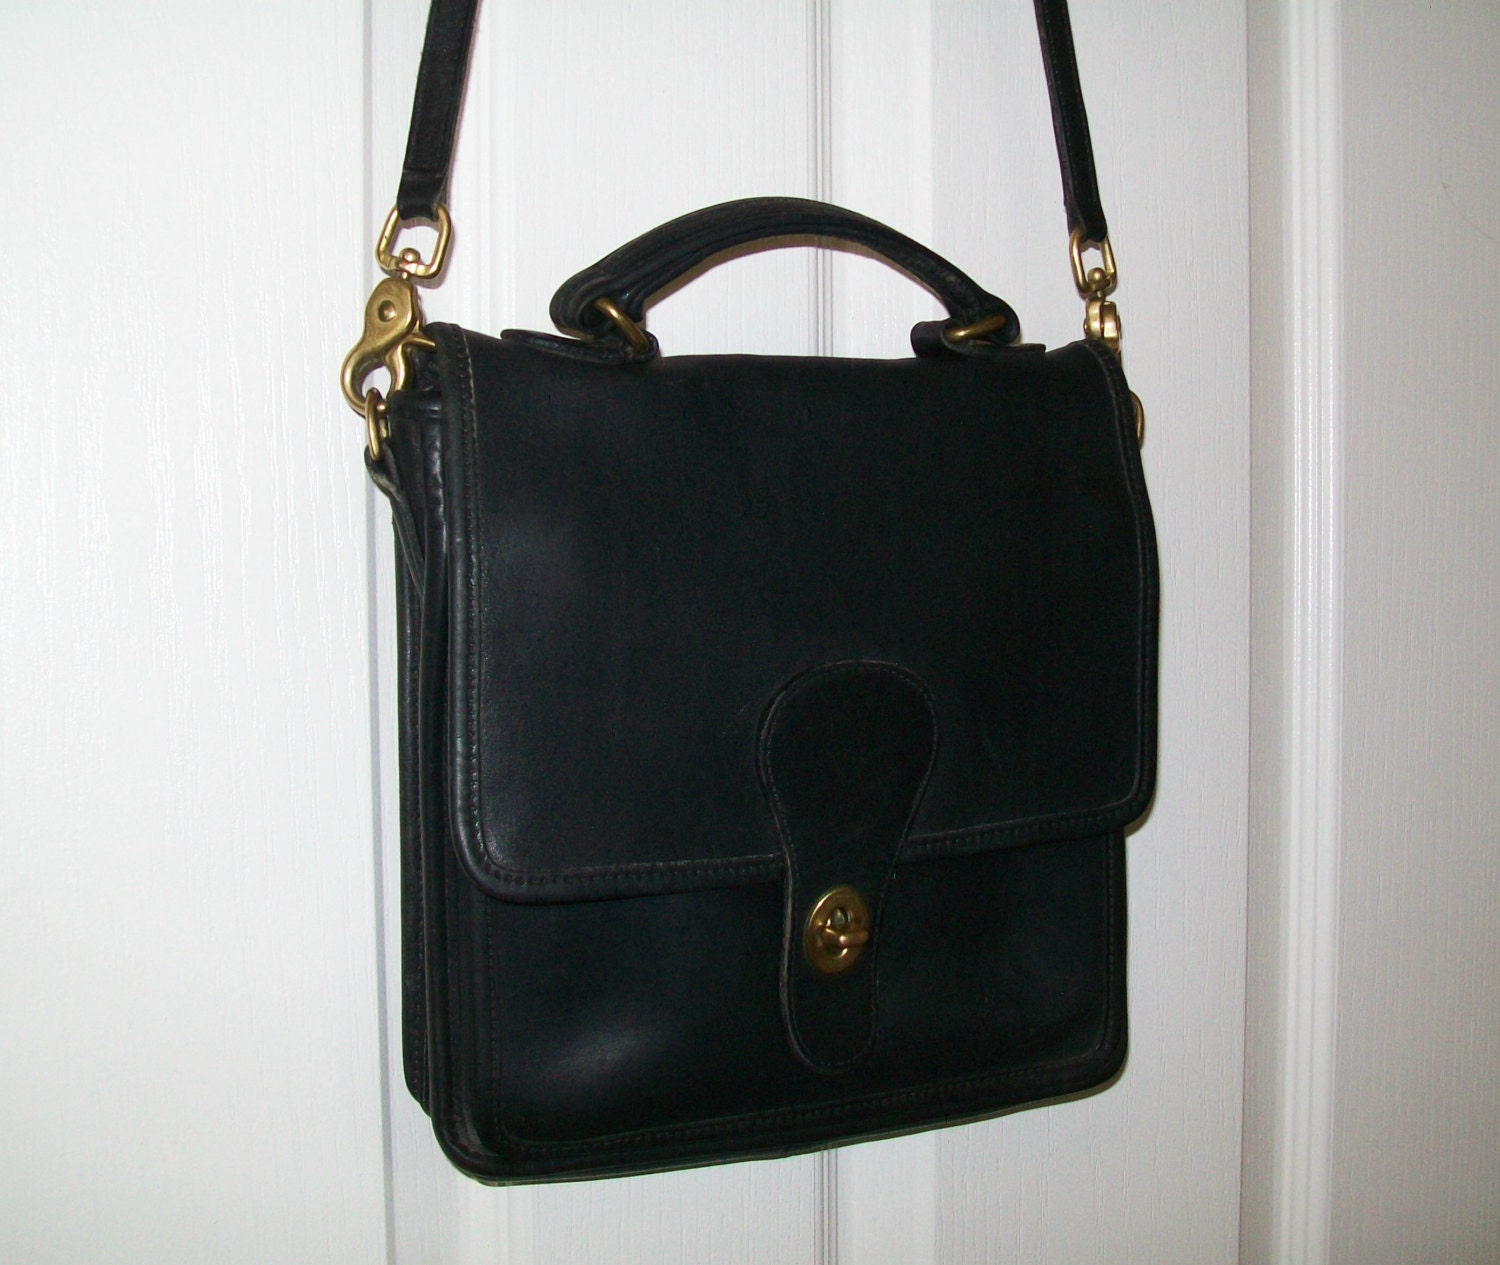 SALE - Vintage Coach handbag, leather, black, shoulder bag, Coach ...